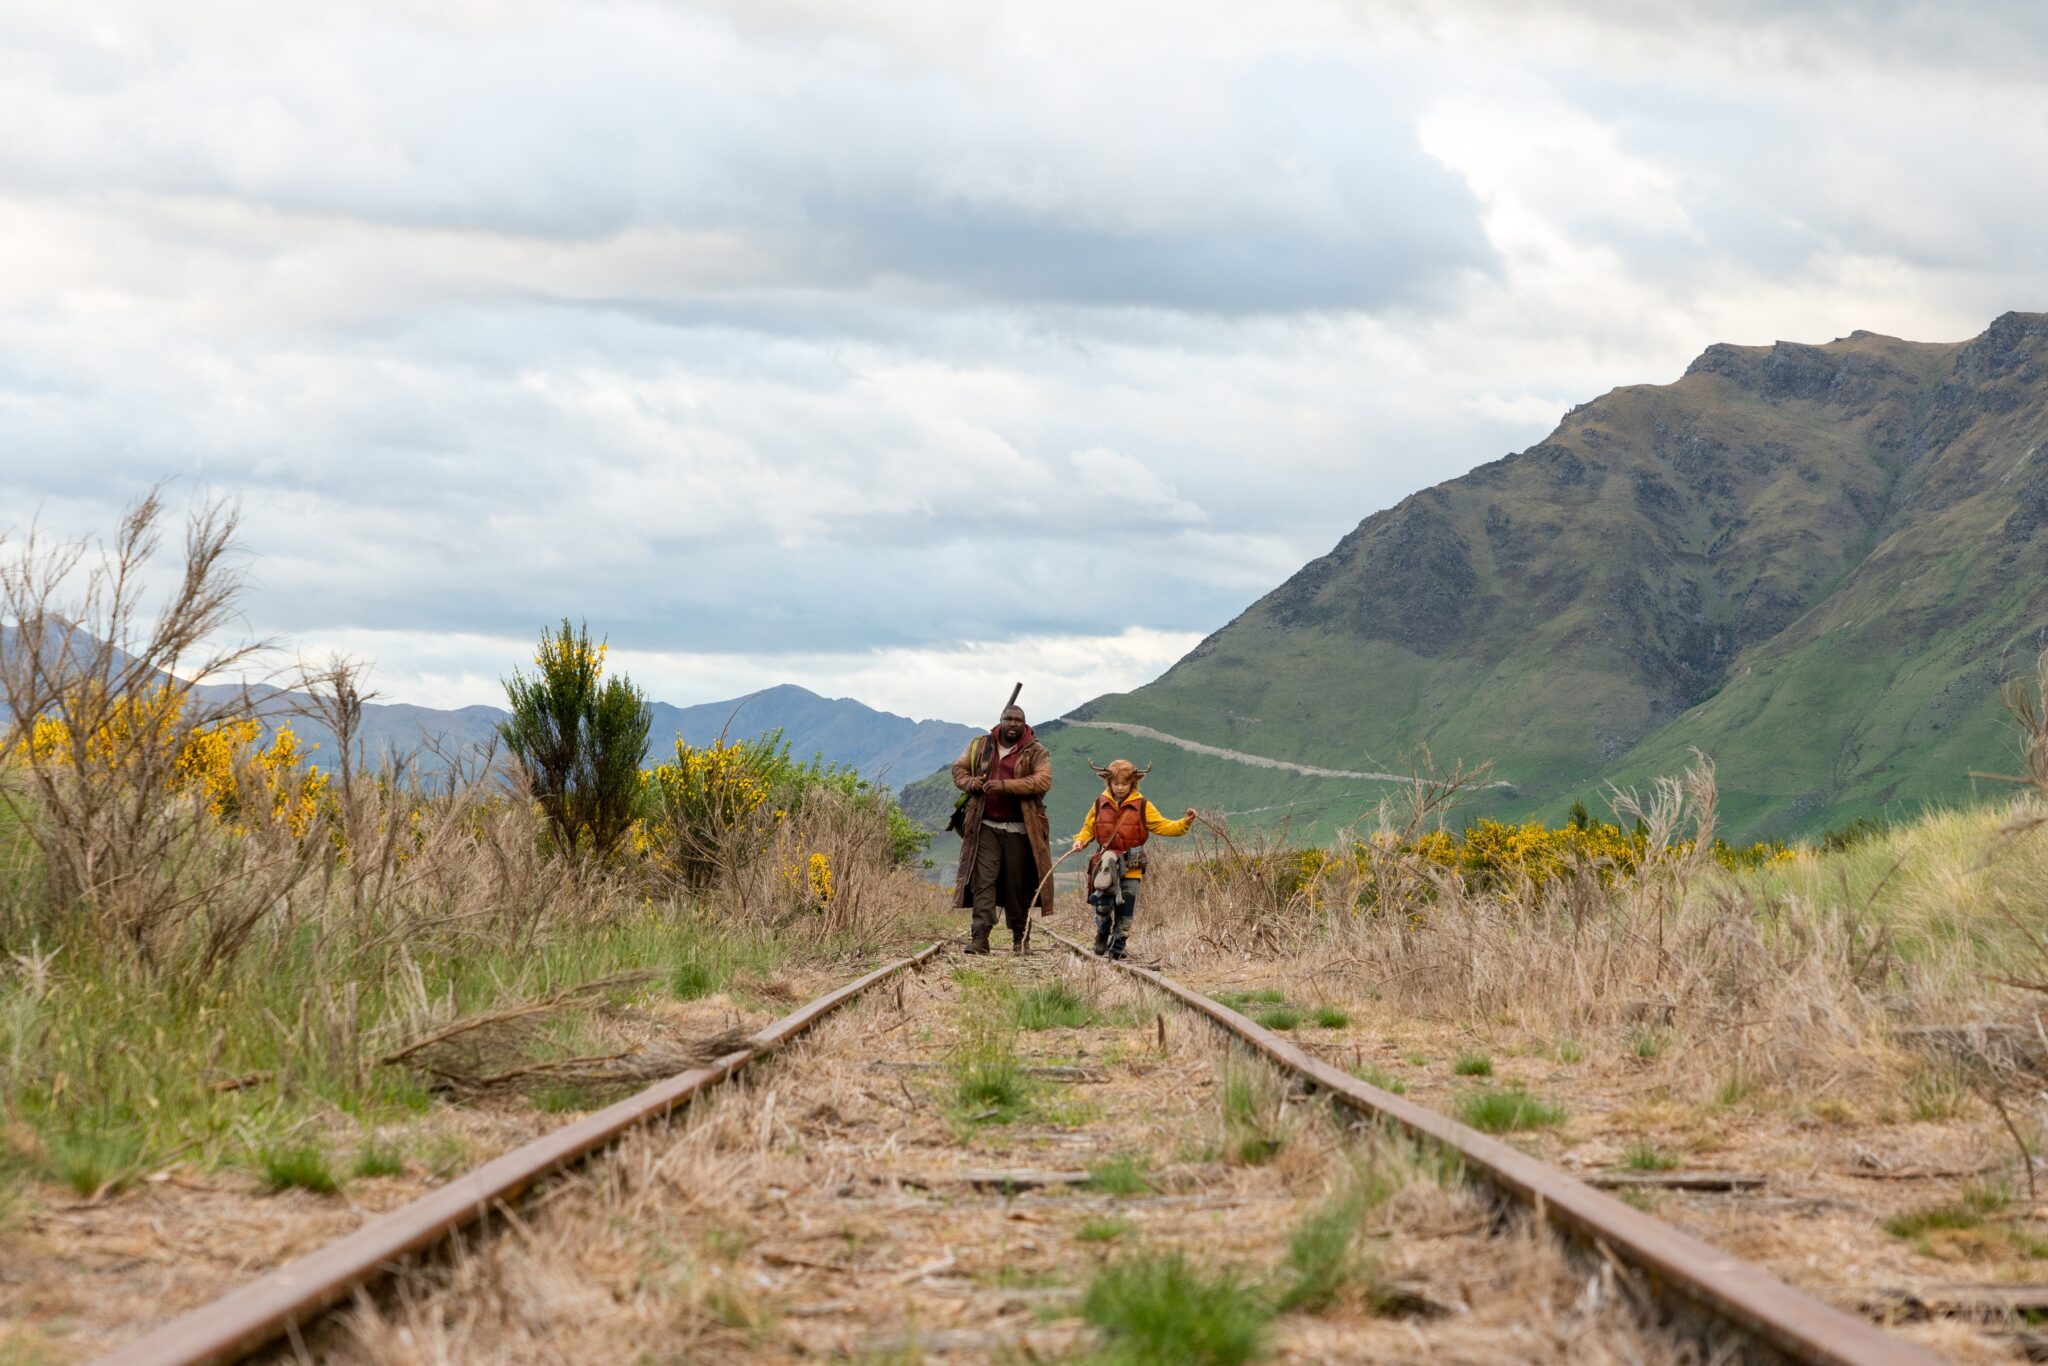 Tommy Jepperd (Nonso Anozie) und Gus (Christian Convery) laufen nebeneinander auf einem stillgelegten Gleis durch die Landschaft. Im Hintergrund sieht man ein Gebirge. Jepperd trägt ein Gewehr und Gus hält zwei Stöcke in den Händen.